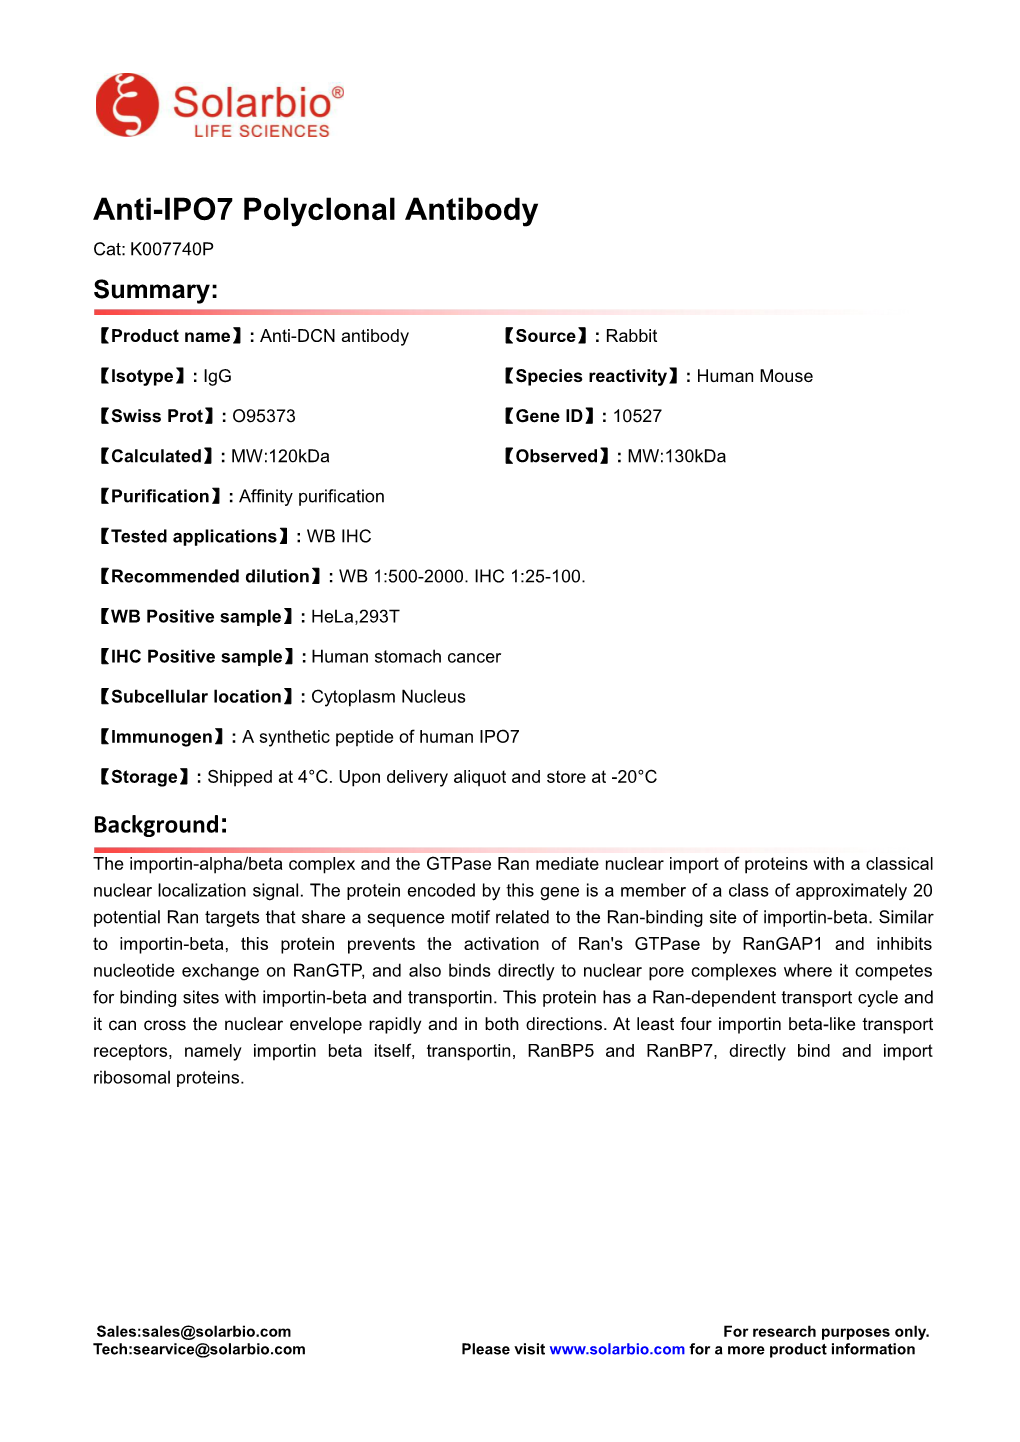 Anti-IPO7 Polyclonal Antibody Cat: K007740P Summary